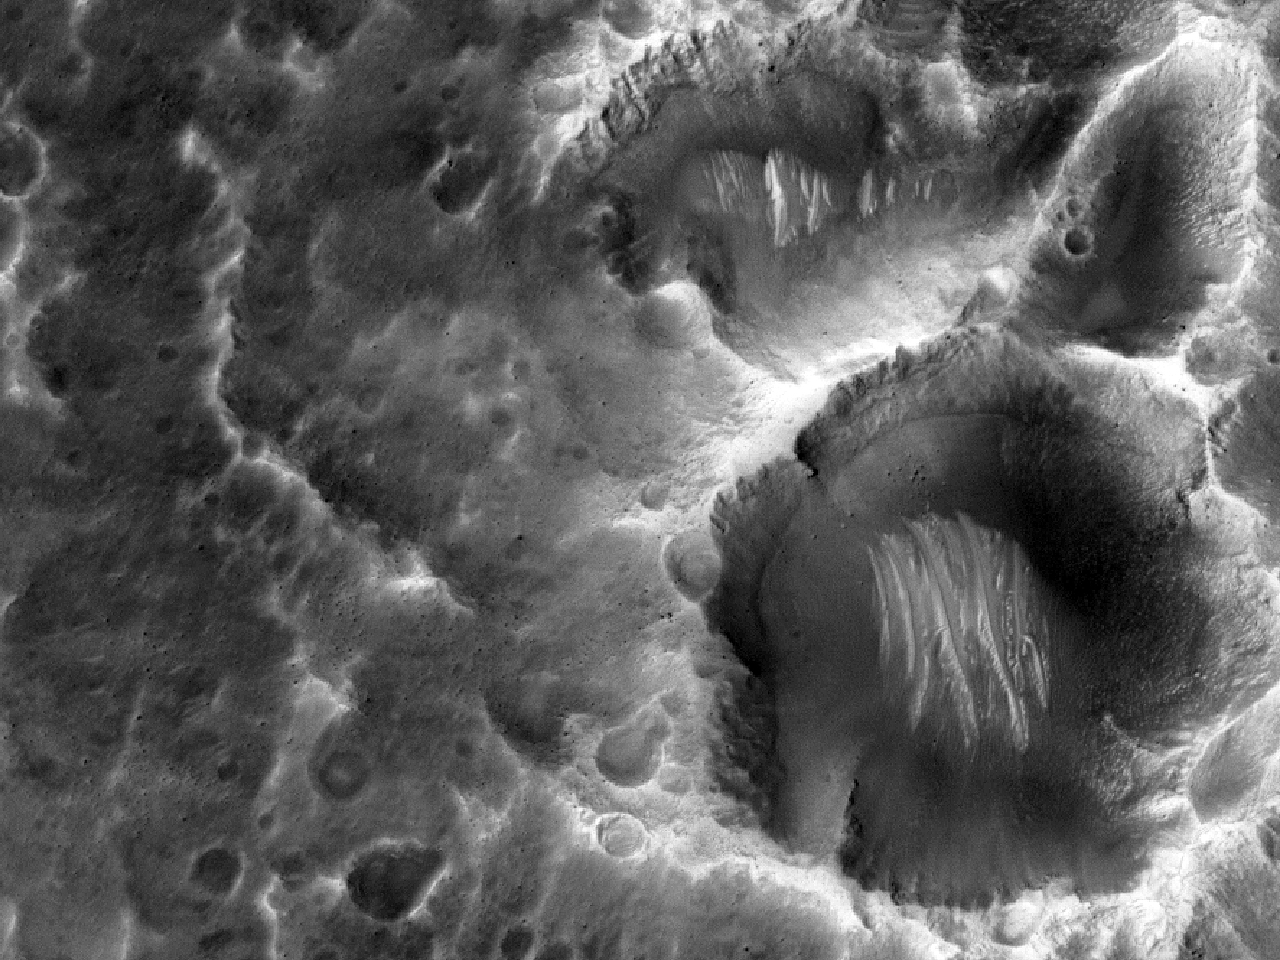 Flacher Krater mit Ablagerungen